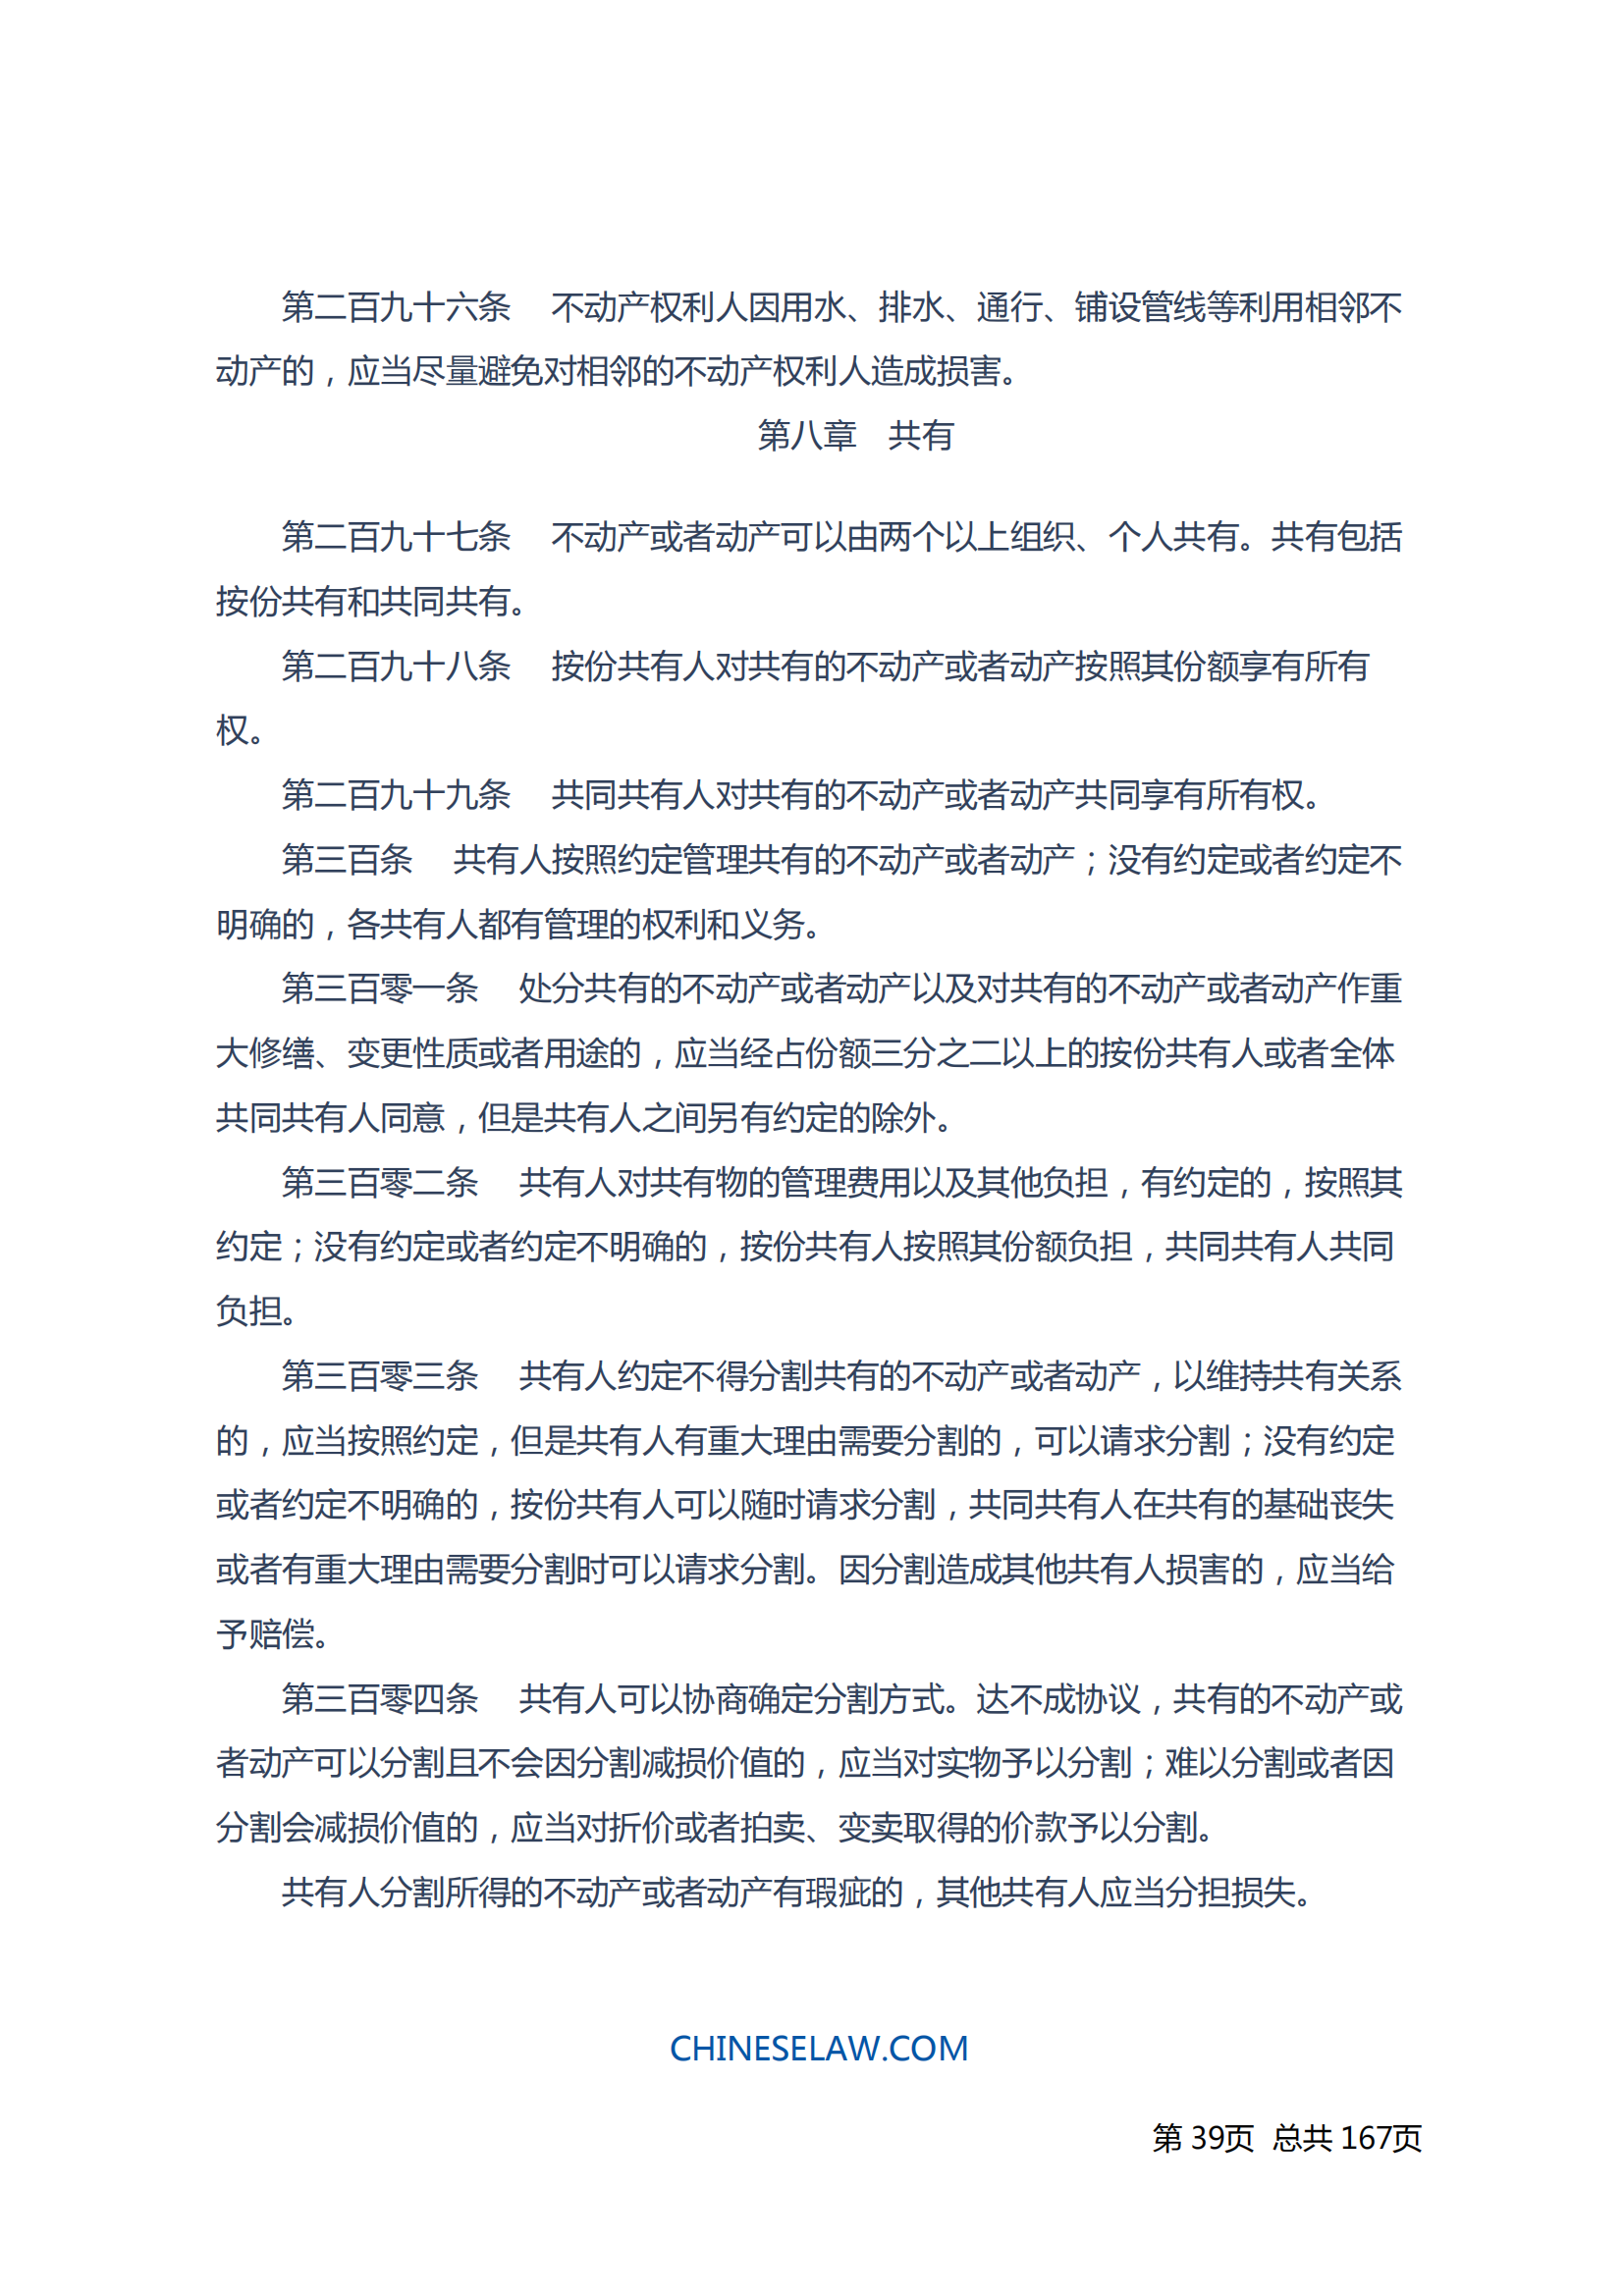 中华人民共和国民法典_38